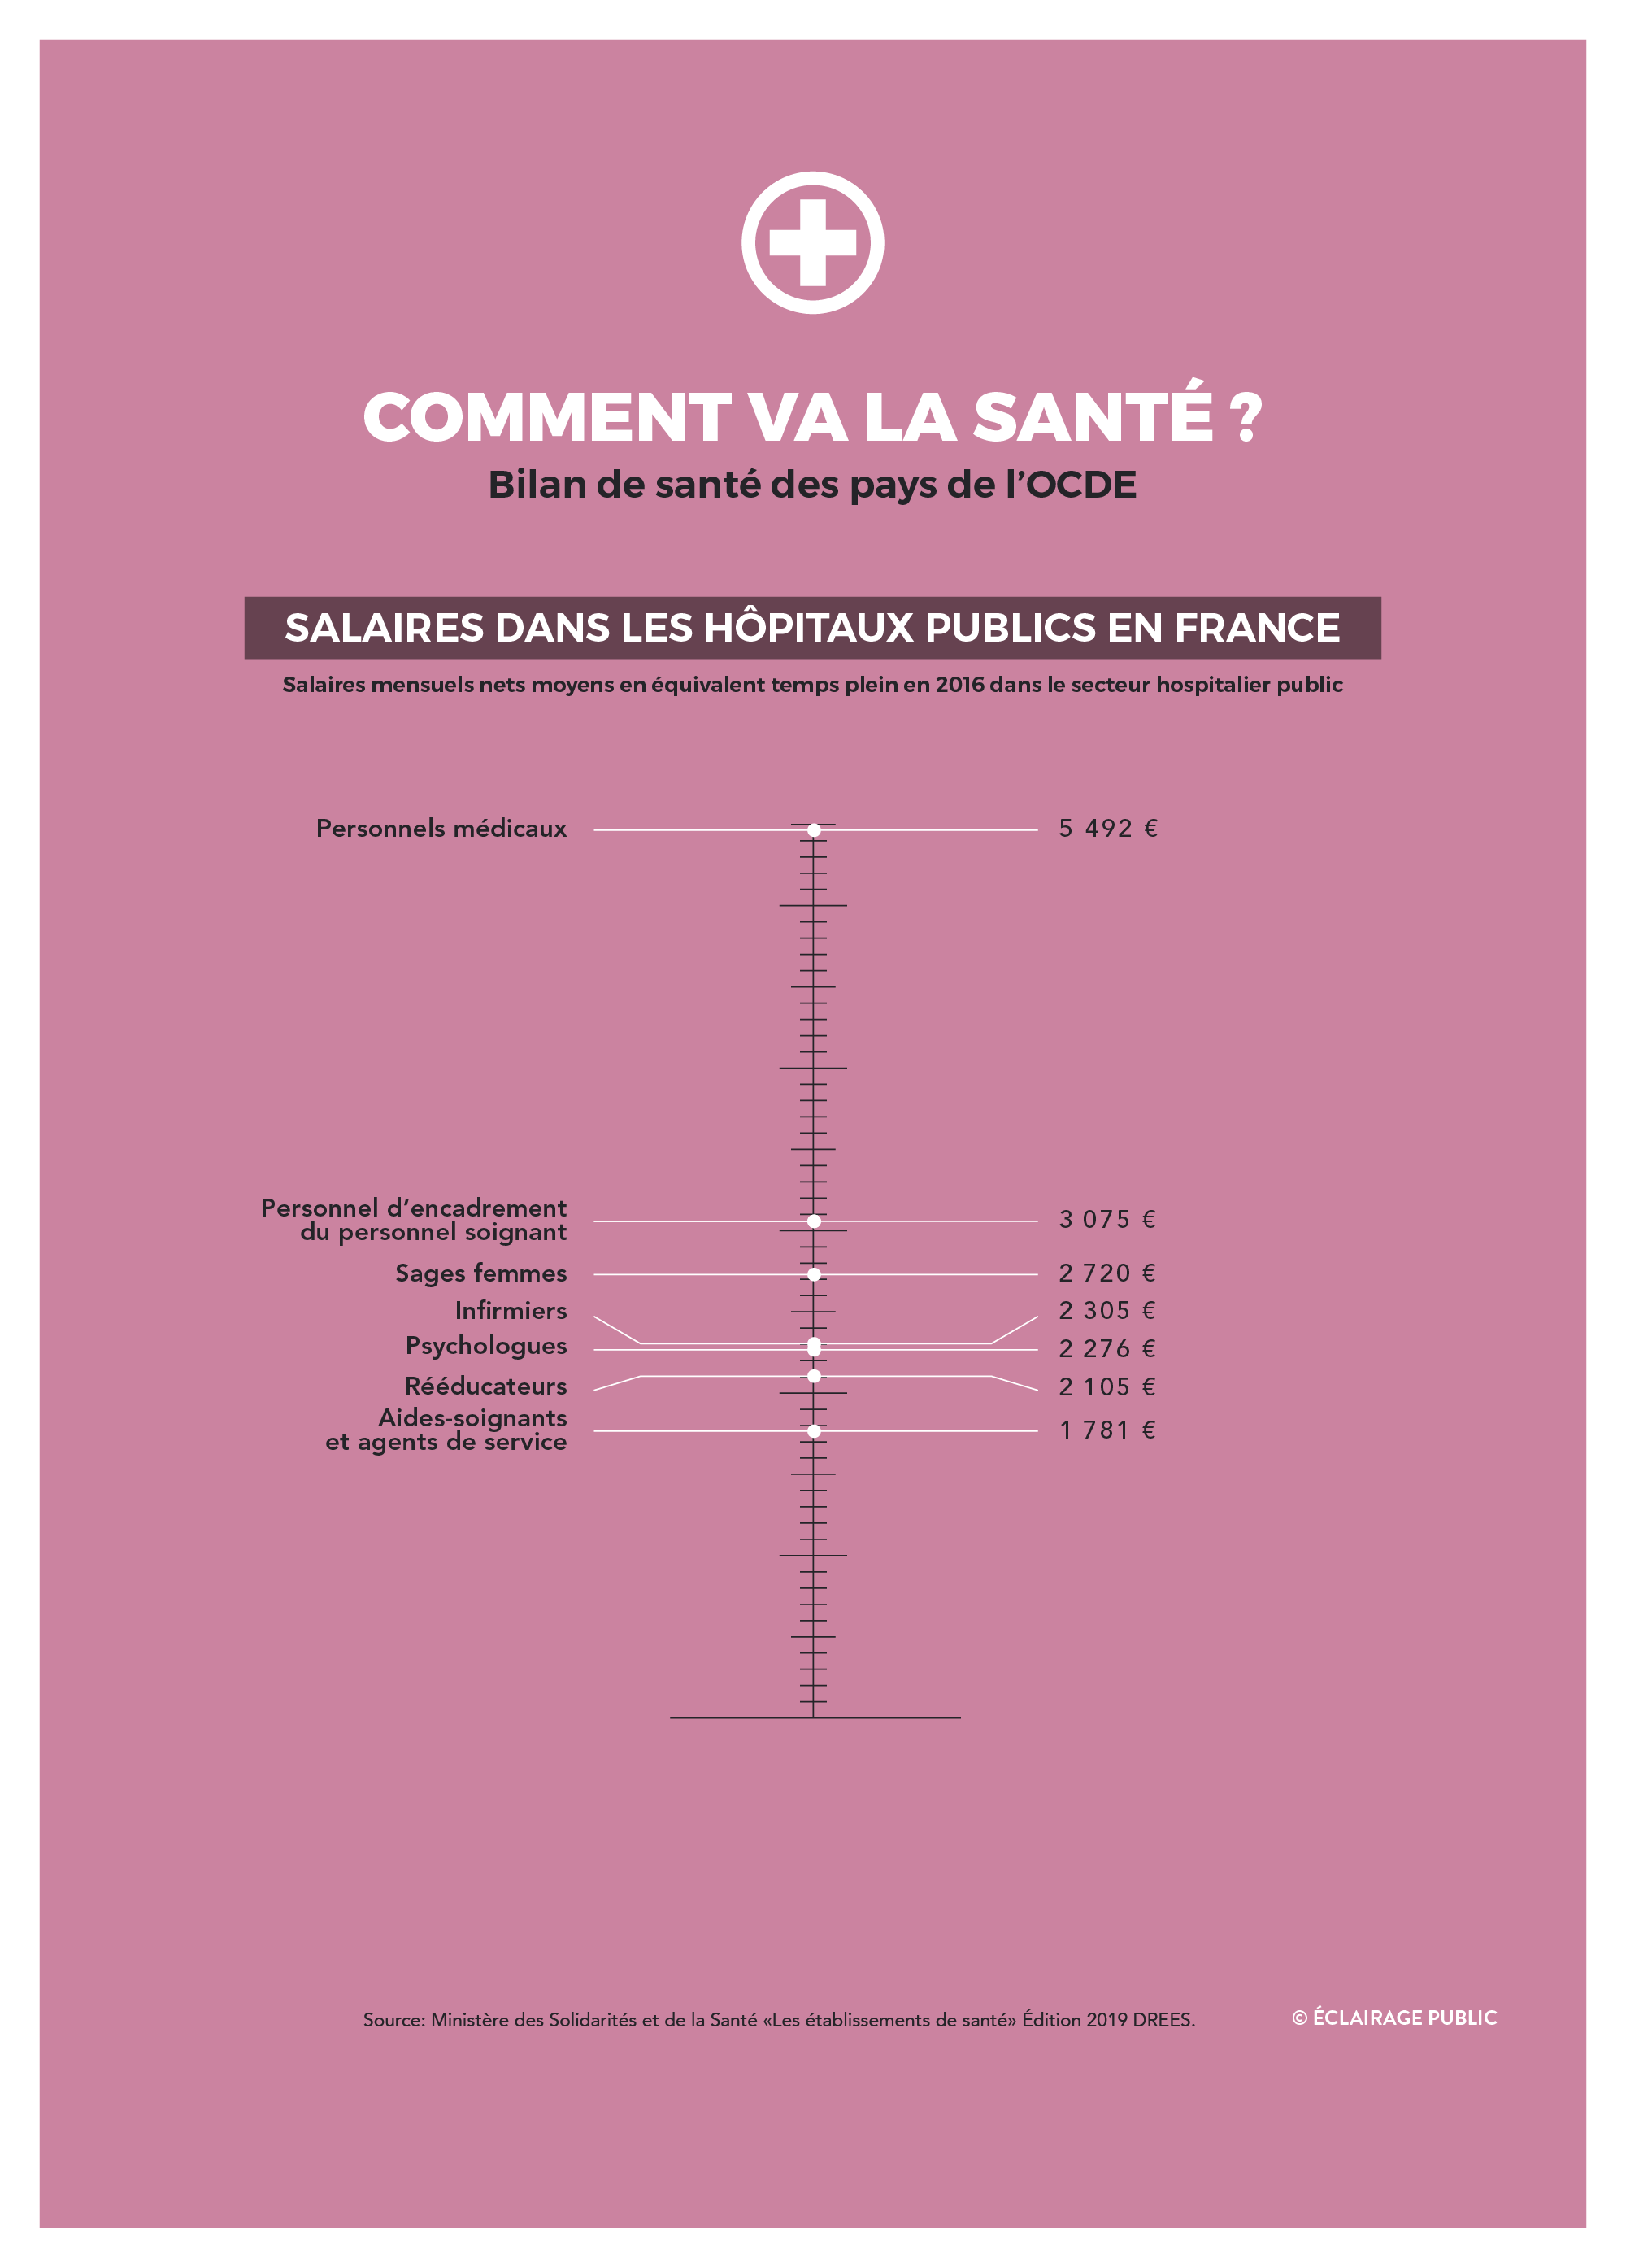 Les-salaires-dans-les-hopitaux-publics-en-France-©-Dataviz-ECLAIRAGE-PUBLIC-2000